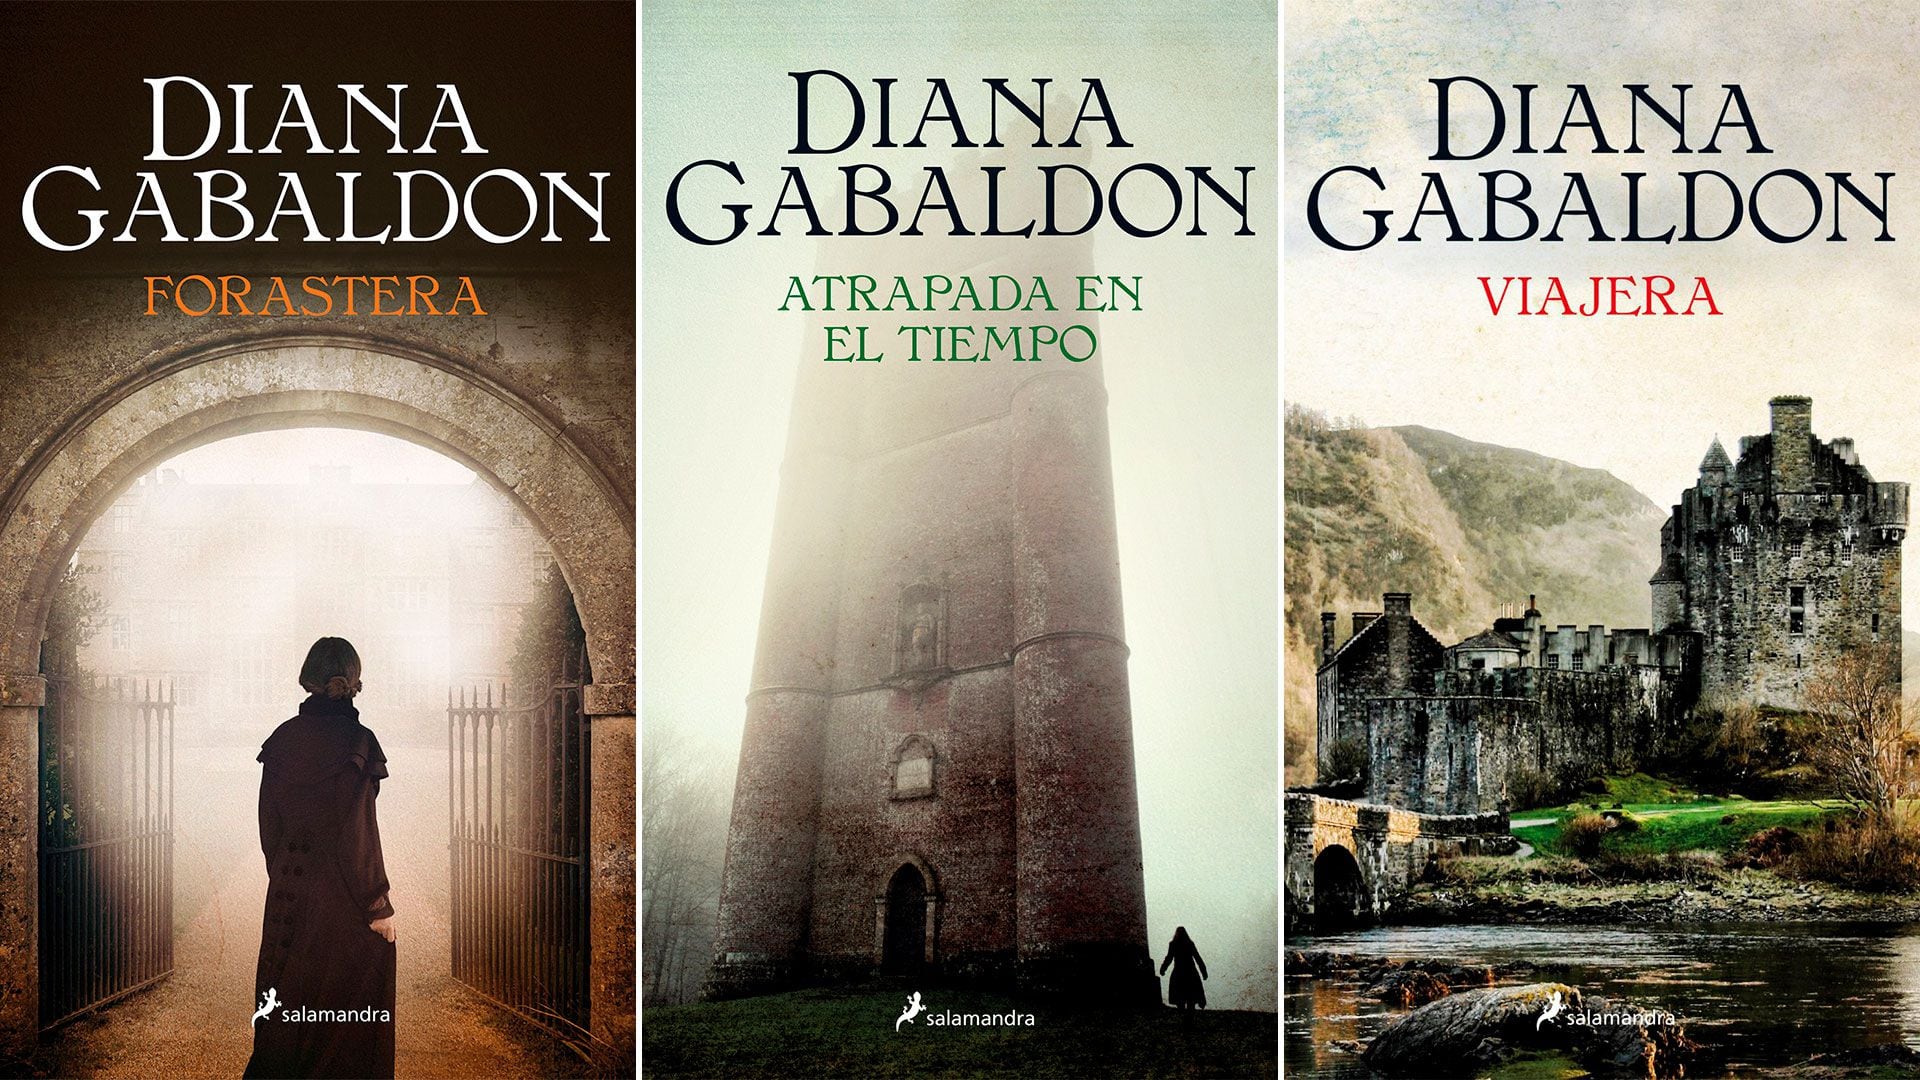 Diana Gabaldon, la autora de Outlander: “Puede que el próximo sea